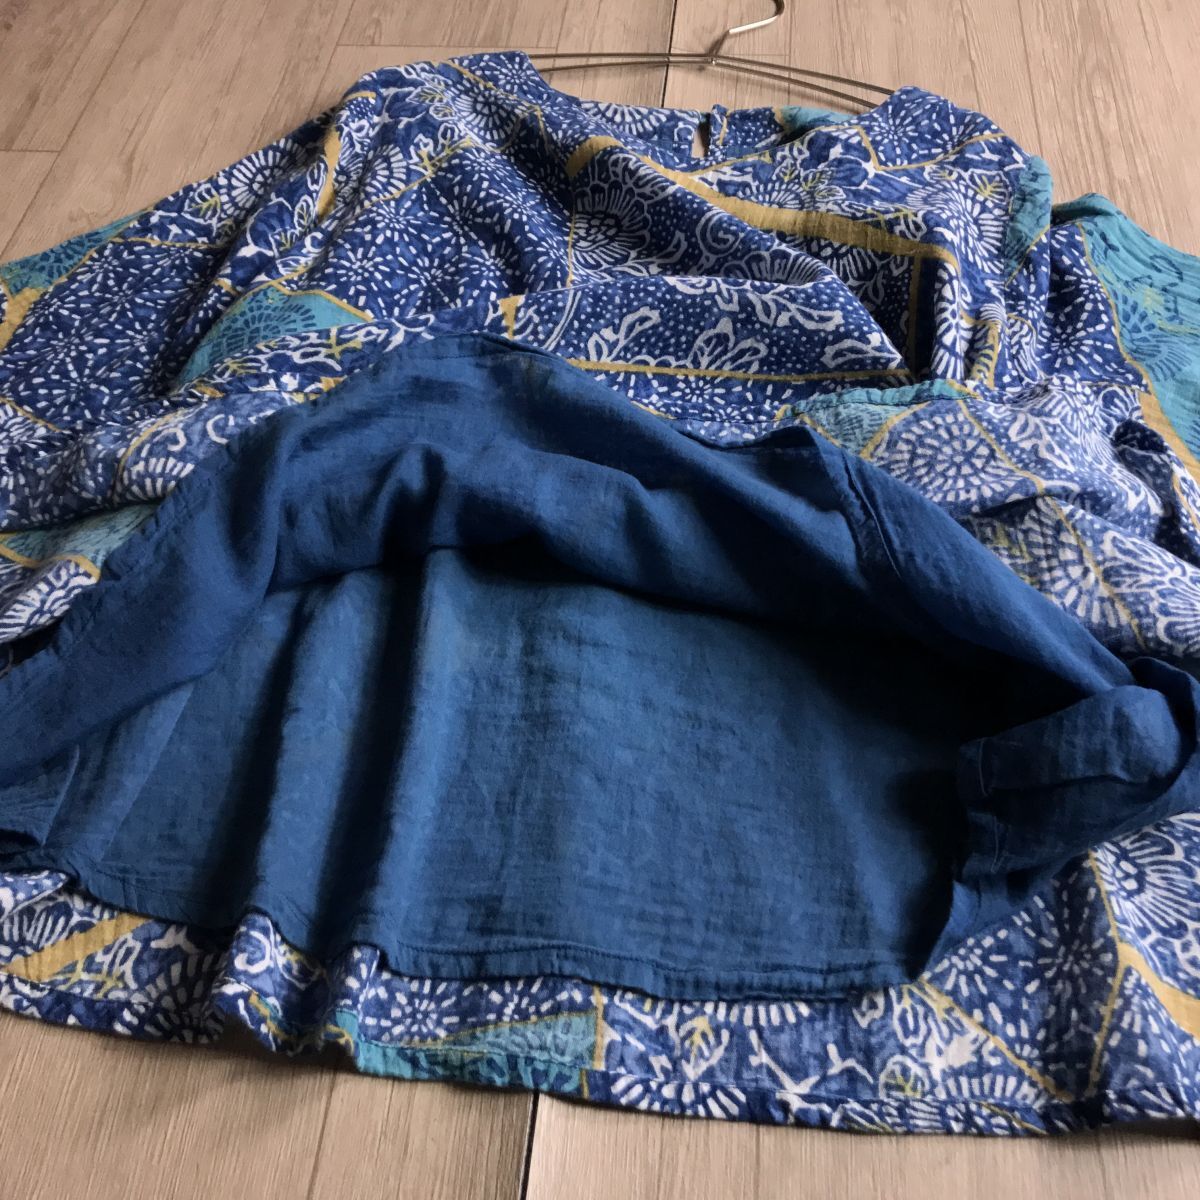 100 иен старт * Chandni модный дизайн Индия хлопок linen Blend ширина свободно body type покрытие блуза свободный размер 